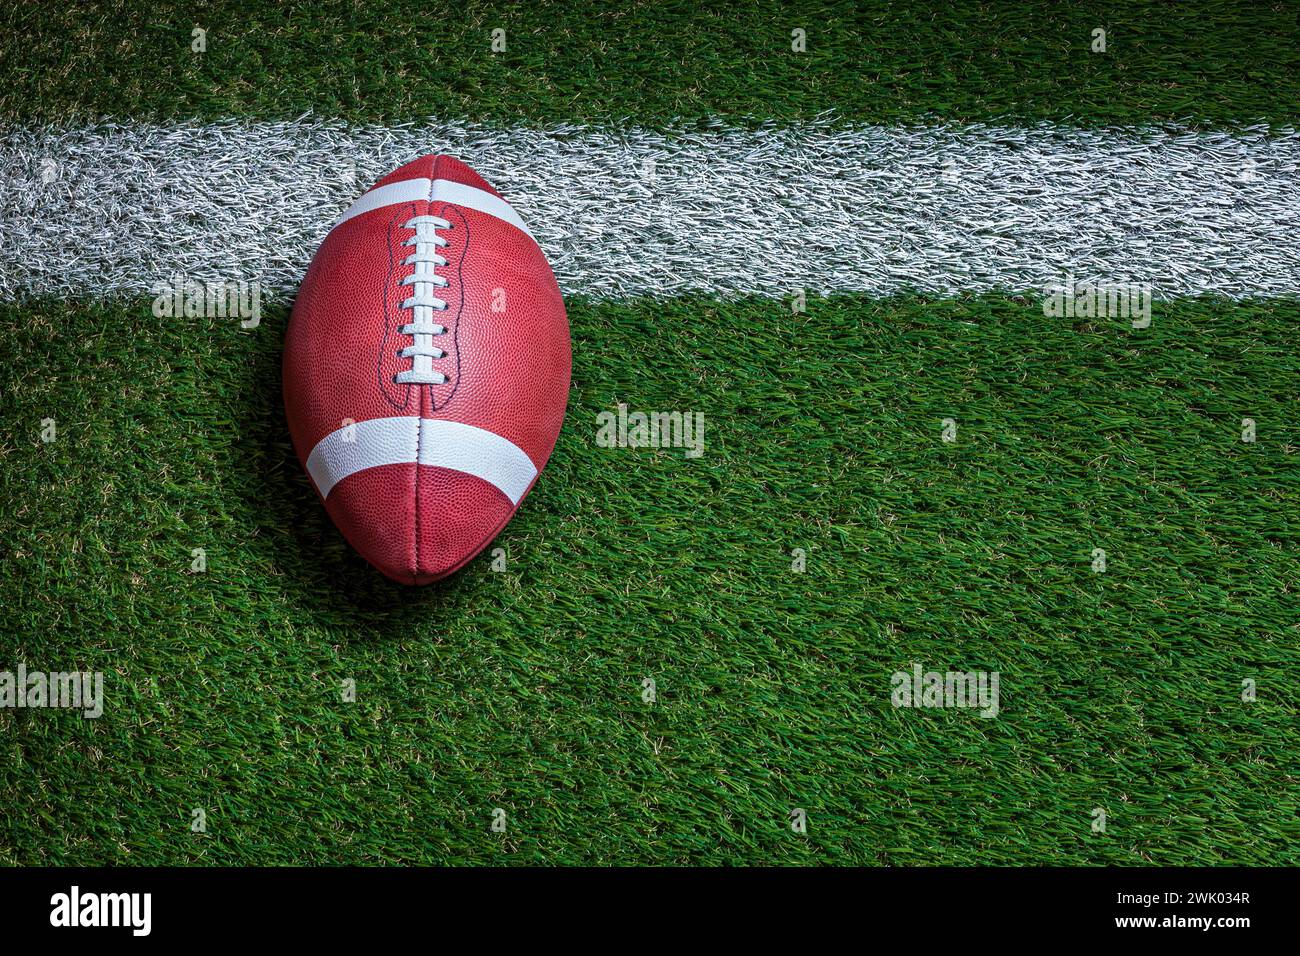 Ballon de football à la ligne de but sur un terrain en herbe vue de dessus Banque D'Images